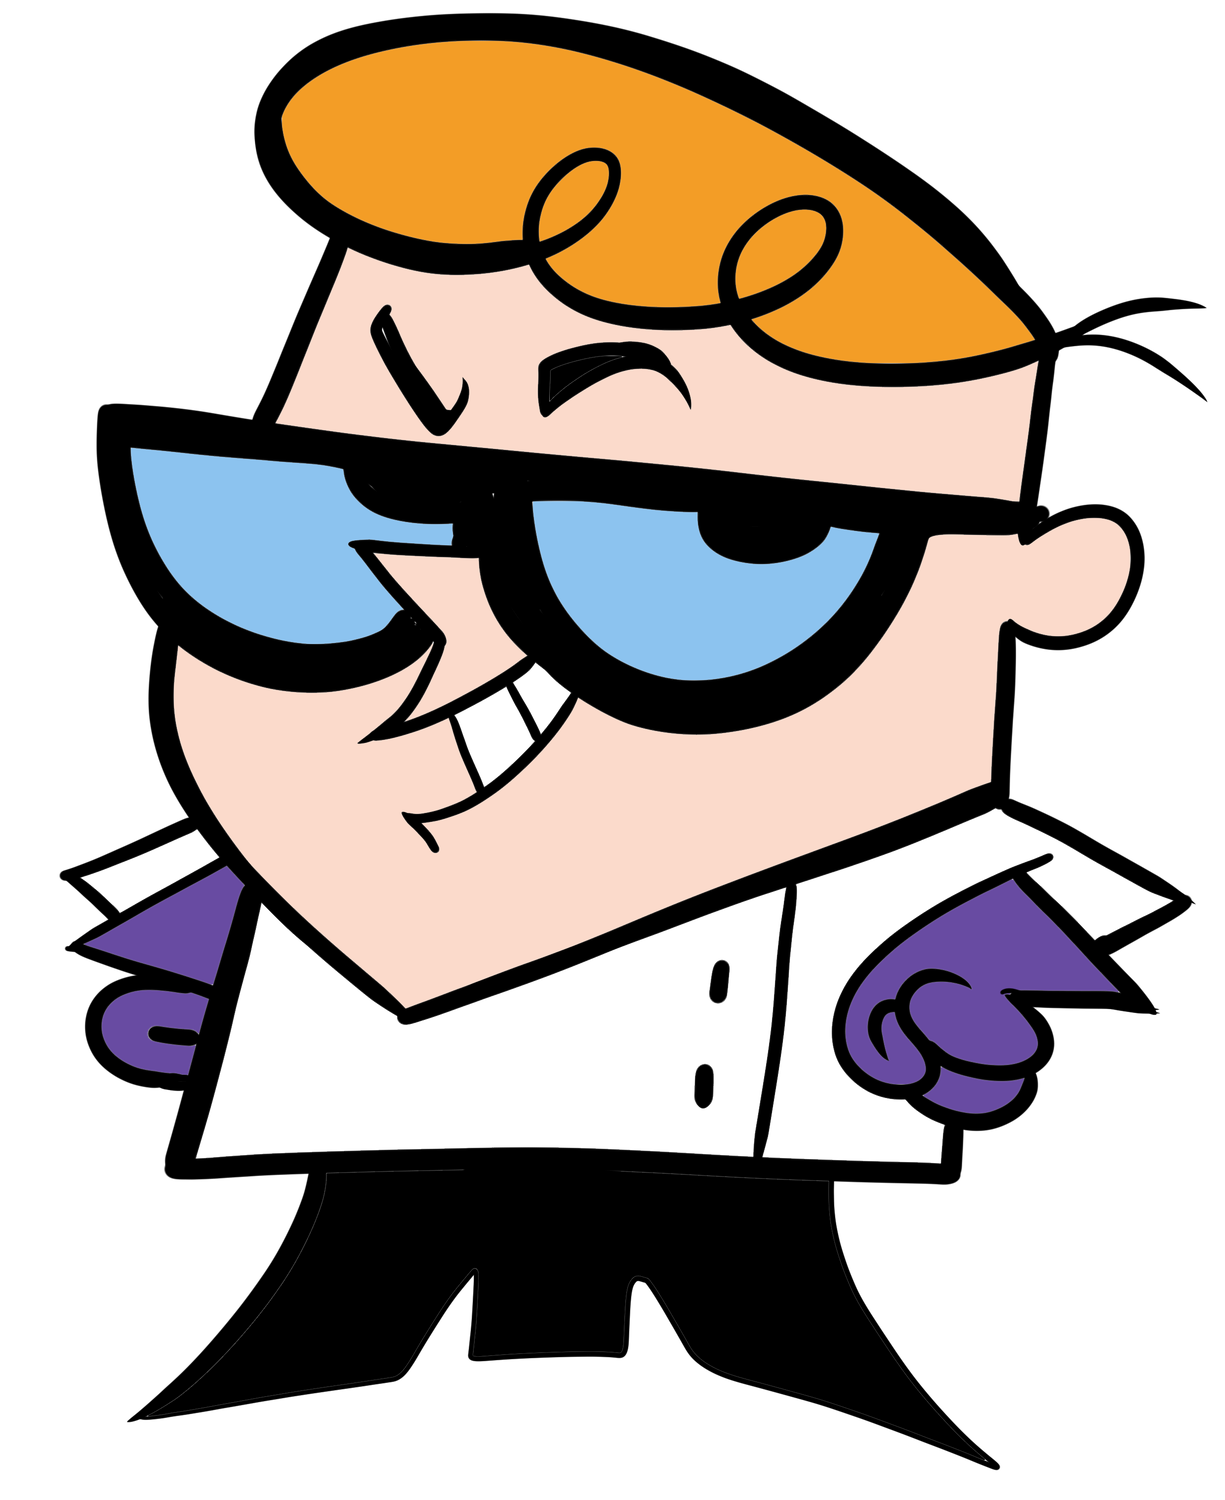 Il laboratorio di Dexter